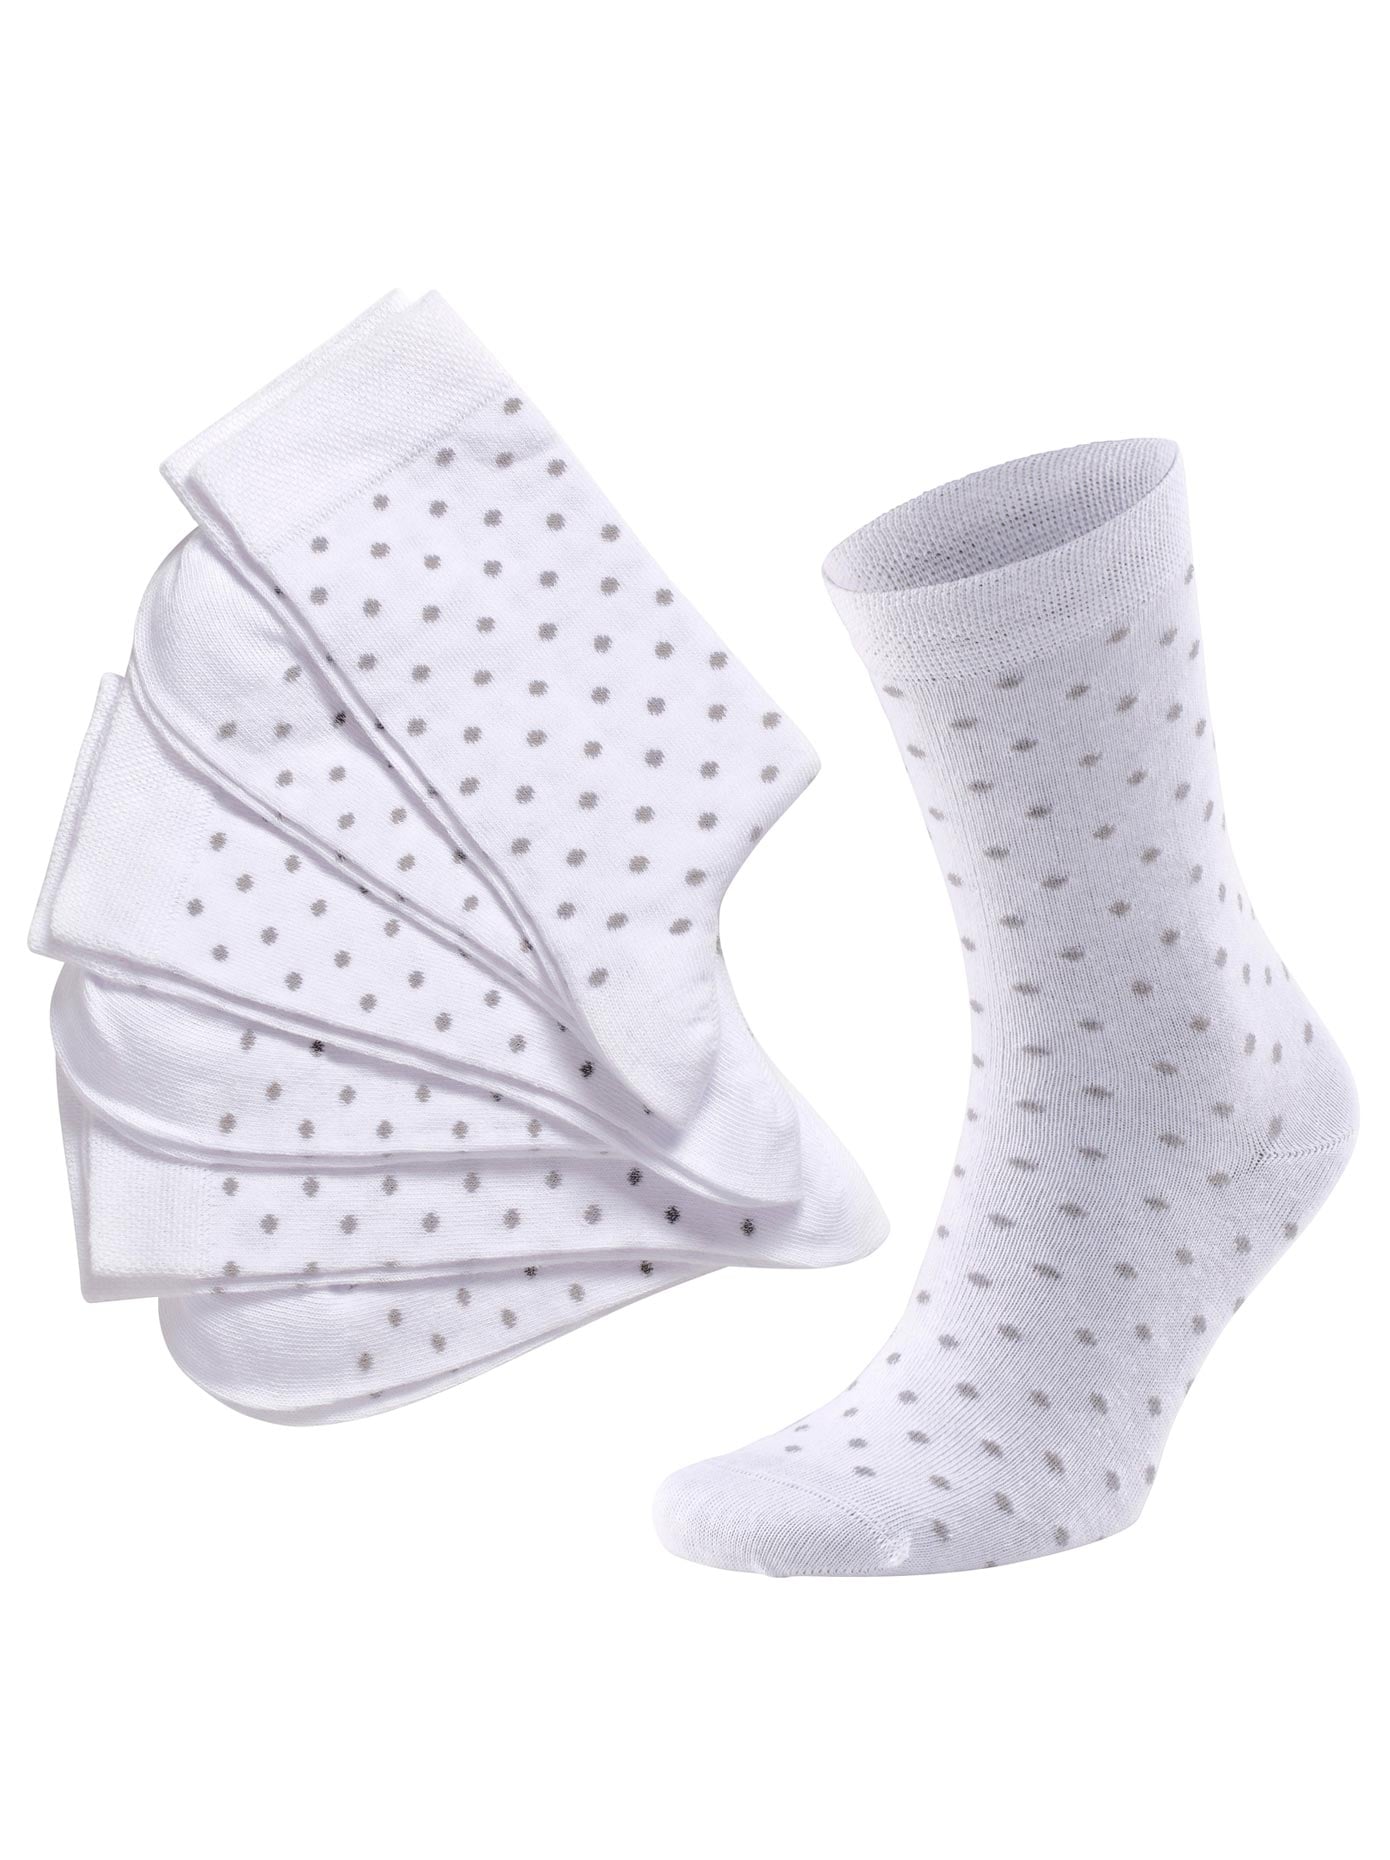 OTTO Socken, wäschepur Paar) bestellen bei (3